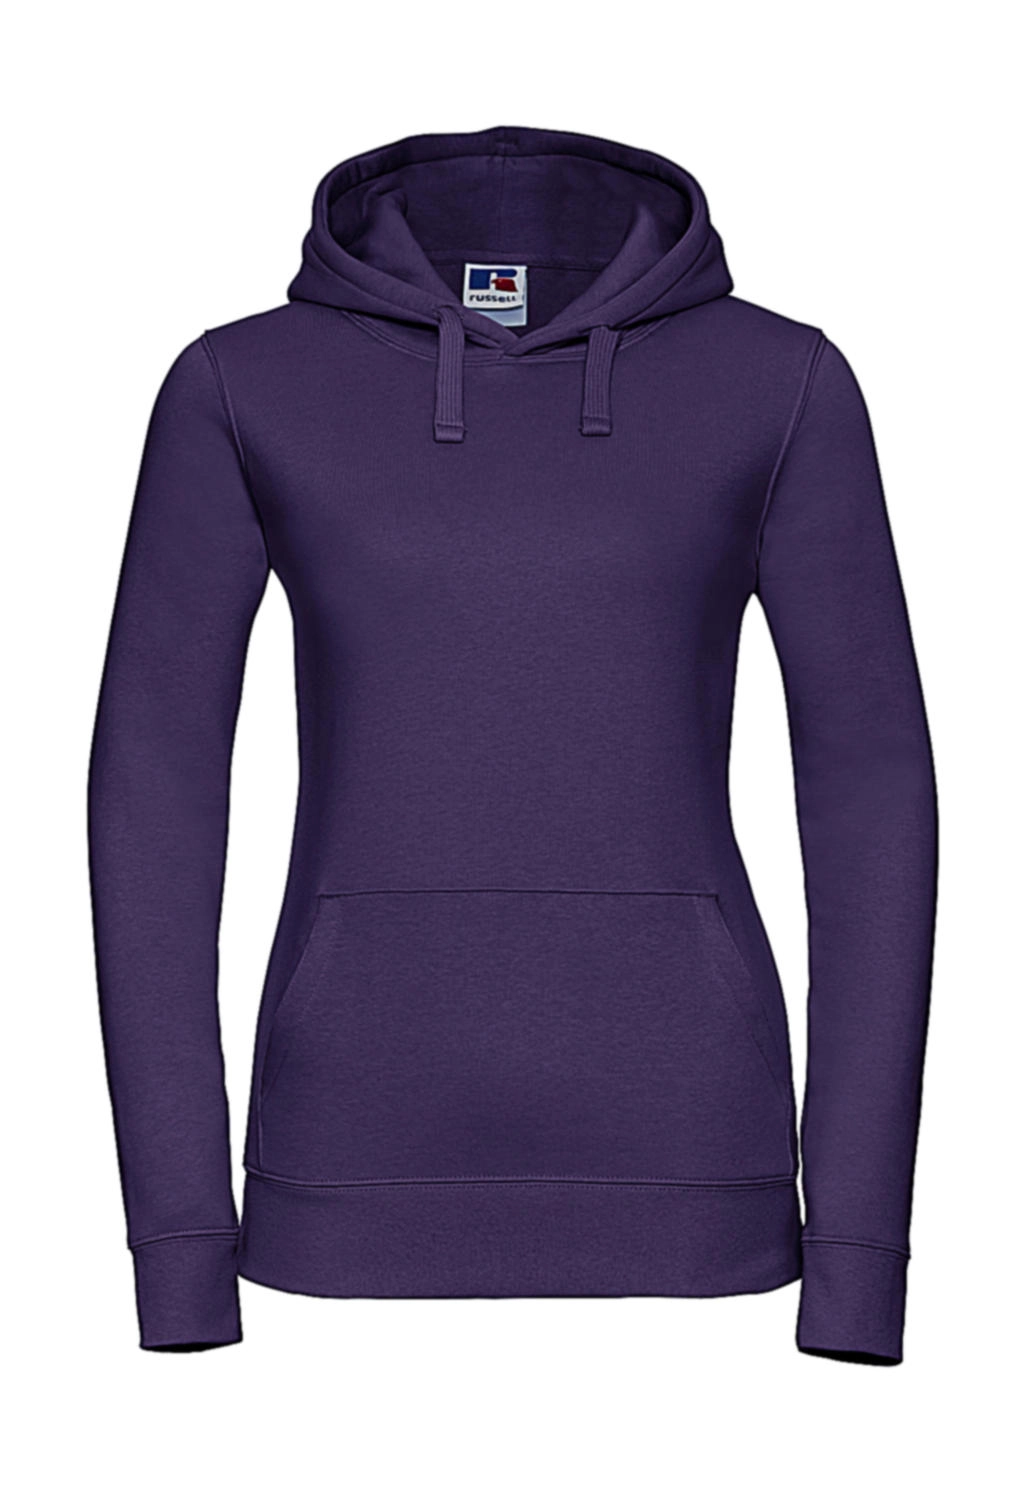 Ladies` Authentic Hooded Sweat zum Besticken und Bedrucken in der Farbe Purple mit Ihren Logo, Schriftzug oder Motiv.